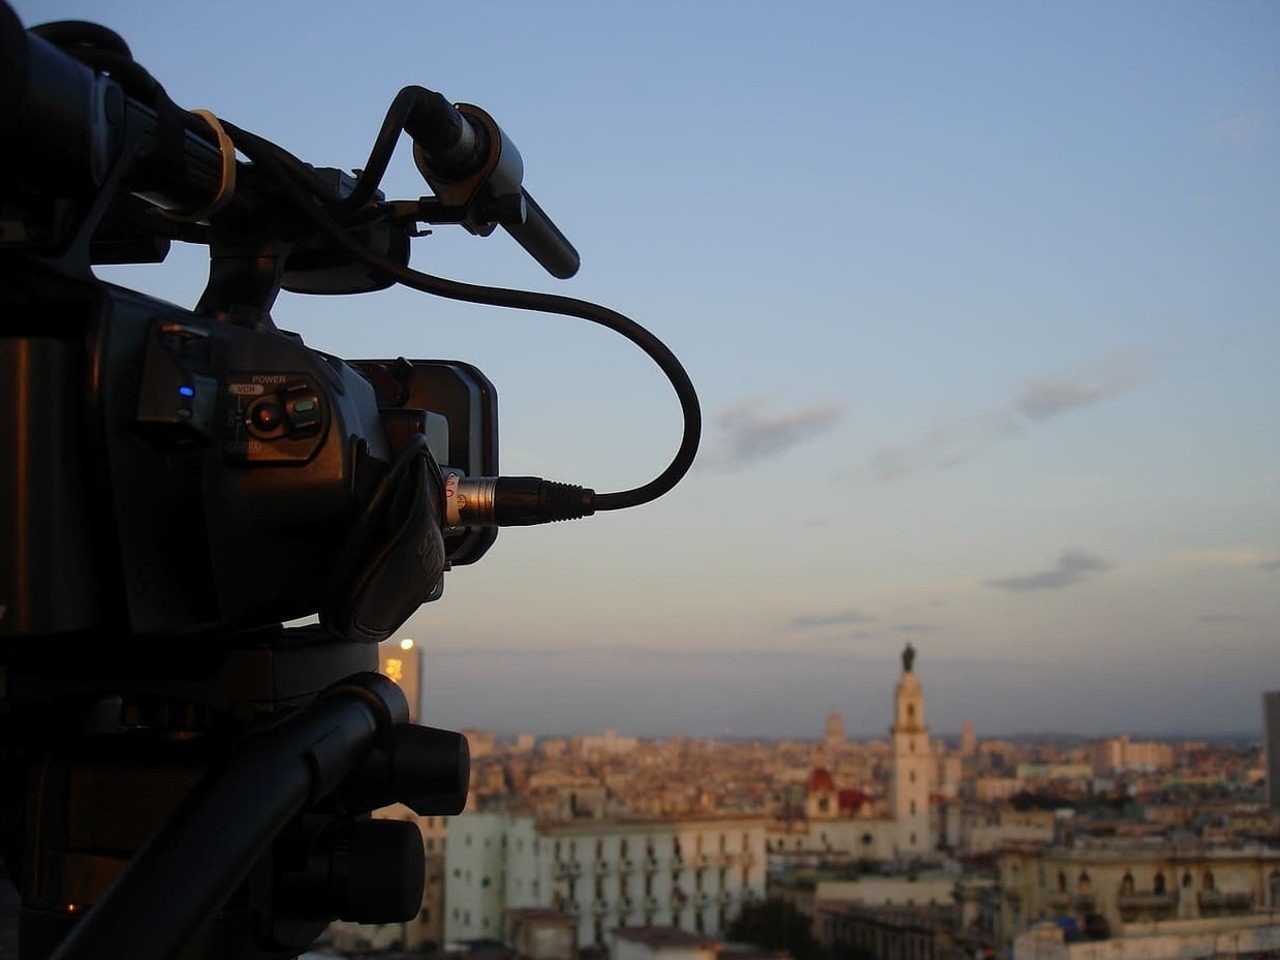 Vue de côté d'une caméra qui filme une ville au loin.